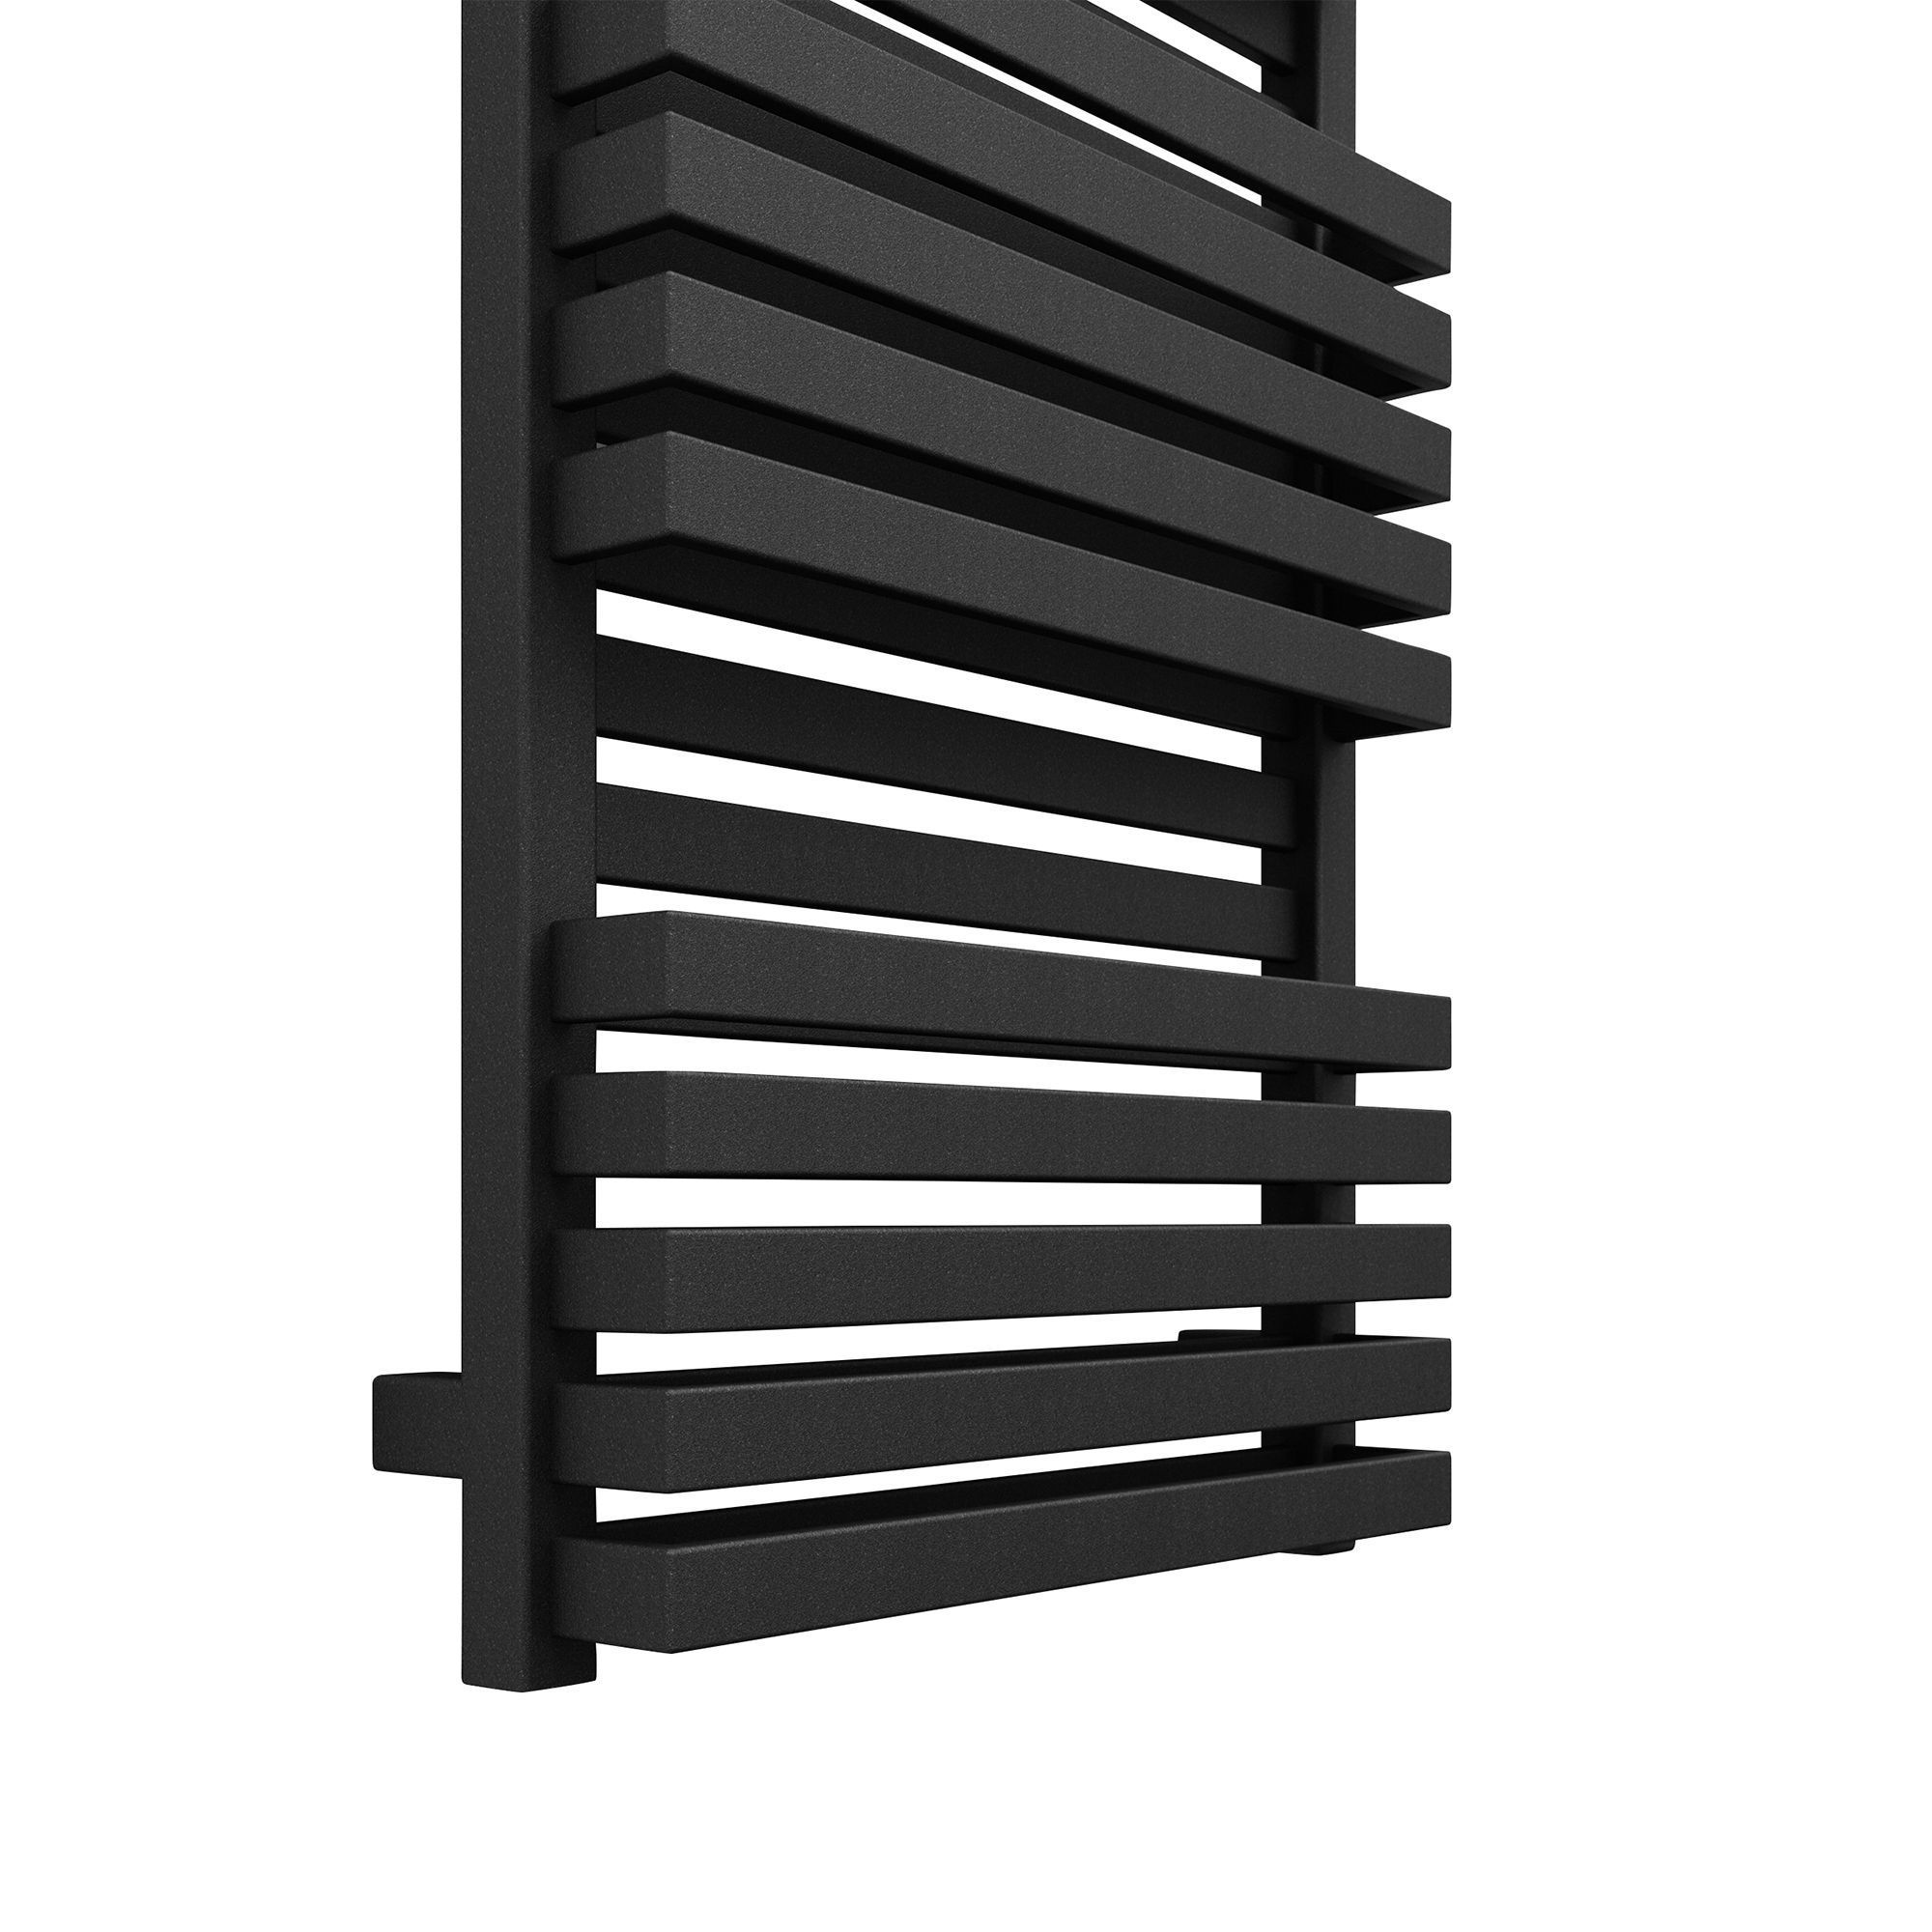 Terma Quadrus Bold Metallic black Towel warmer (W)450mm x (H)870mm